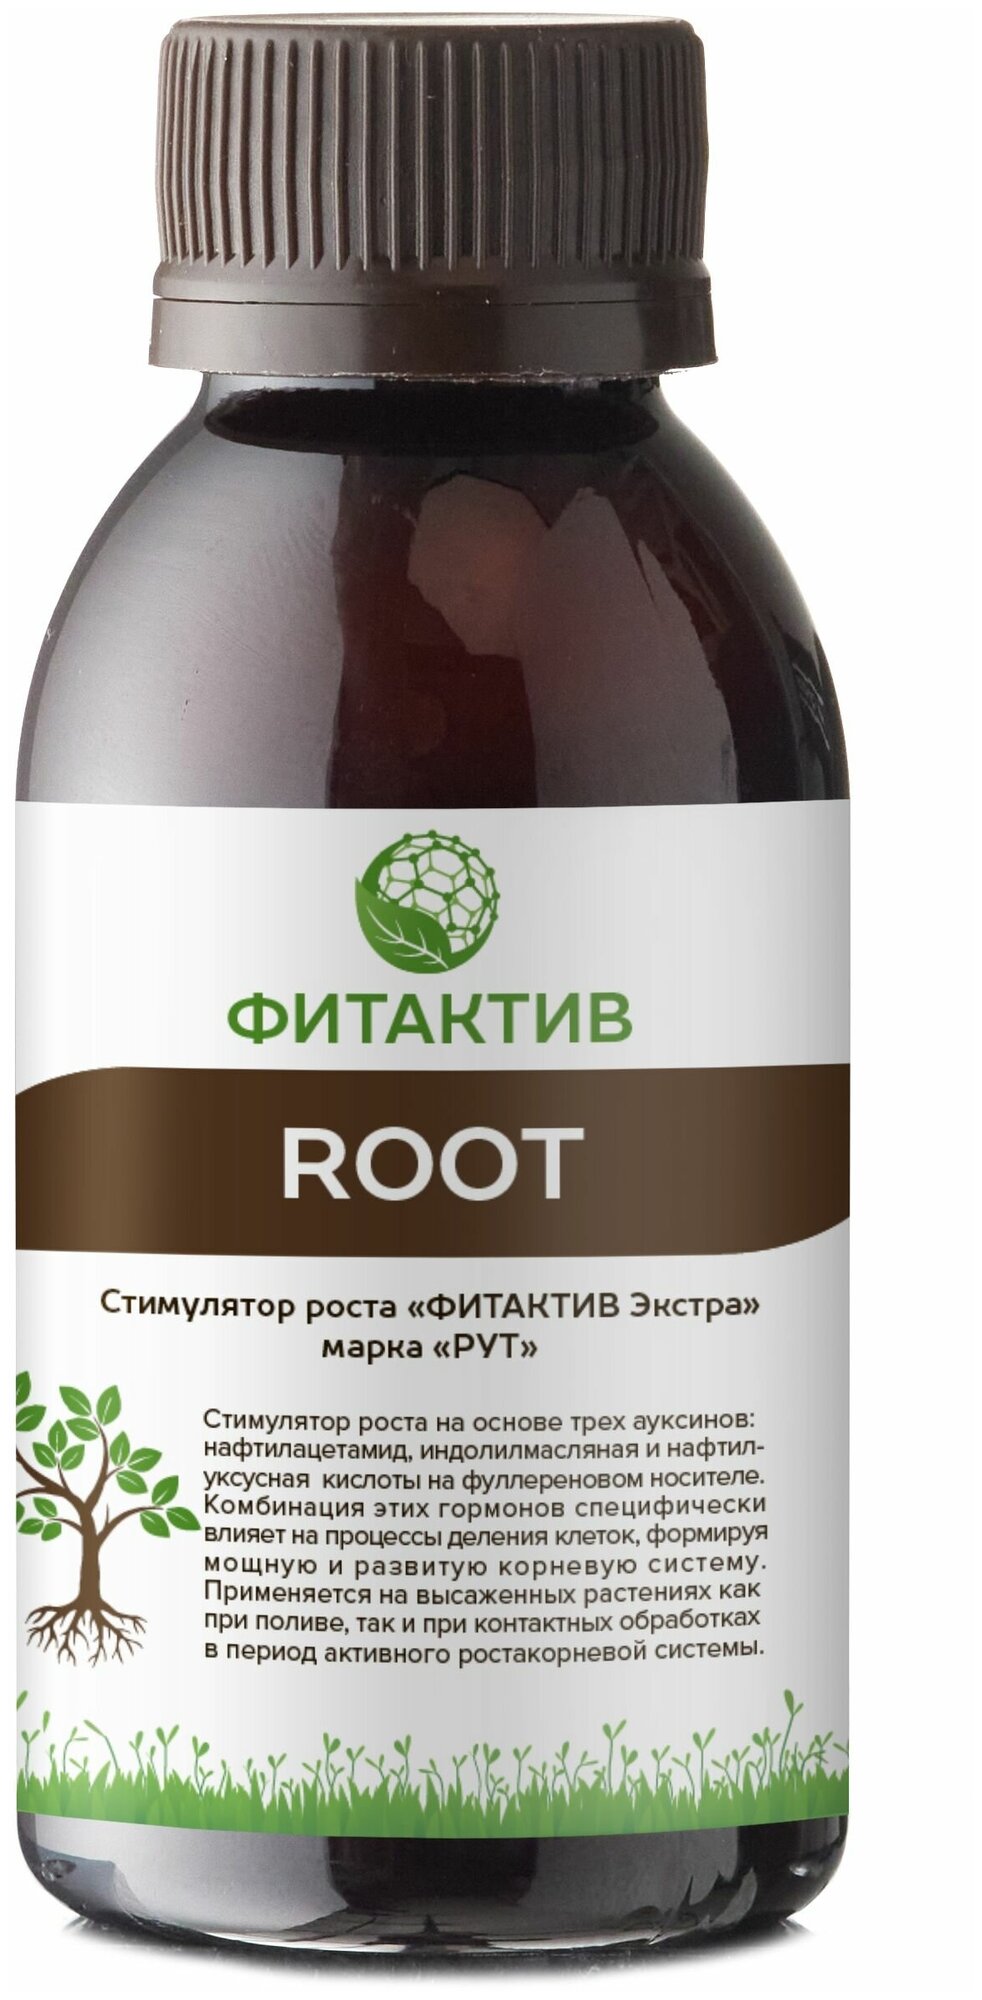 Стимулятор роста придаточных (волосковых) корней Фитактив Рут (Fitaktiv Root, флакон 100 мл)